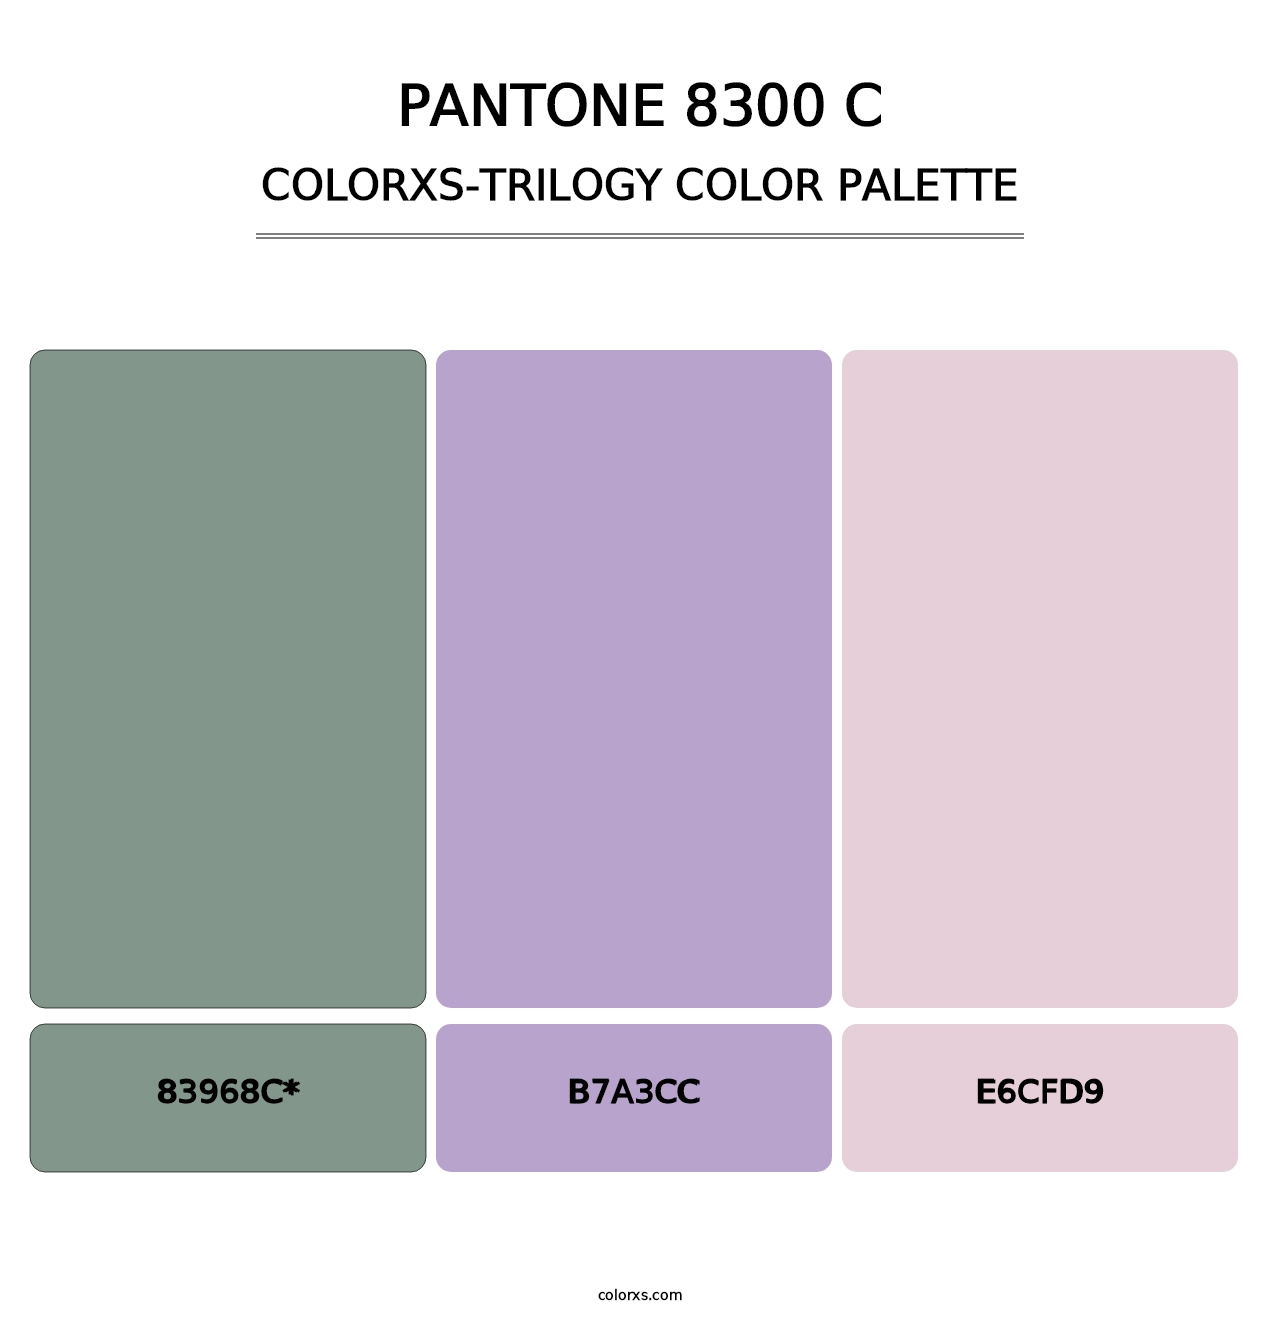 PANTONE 8300 C - Colorxs Trilogy Palette